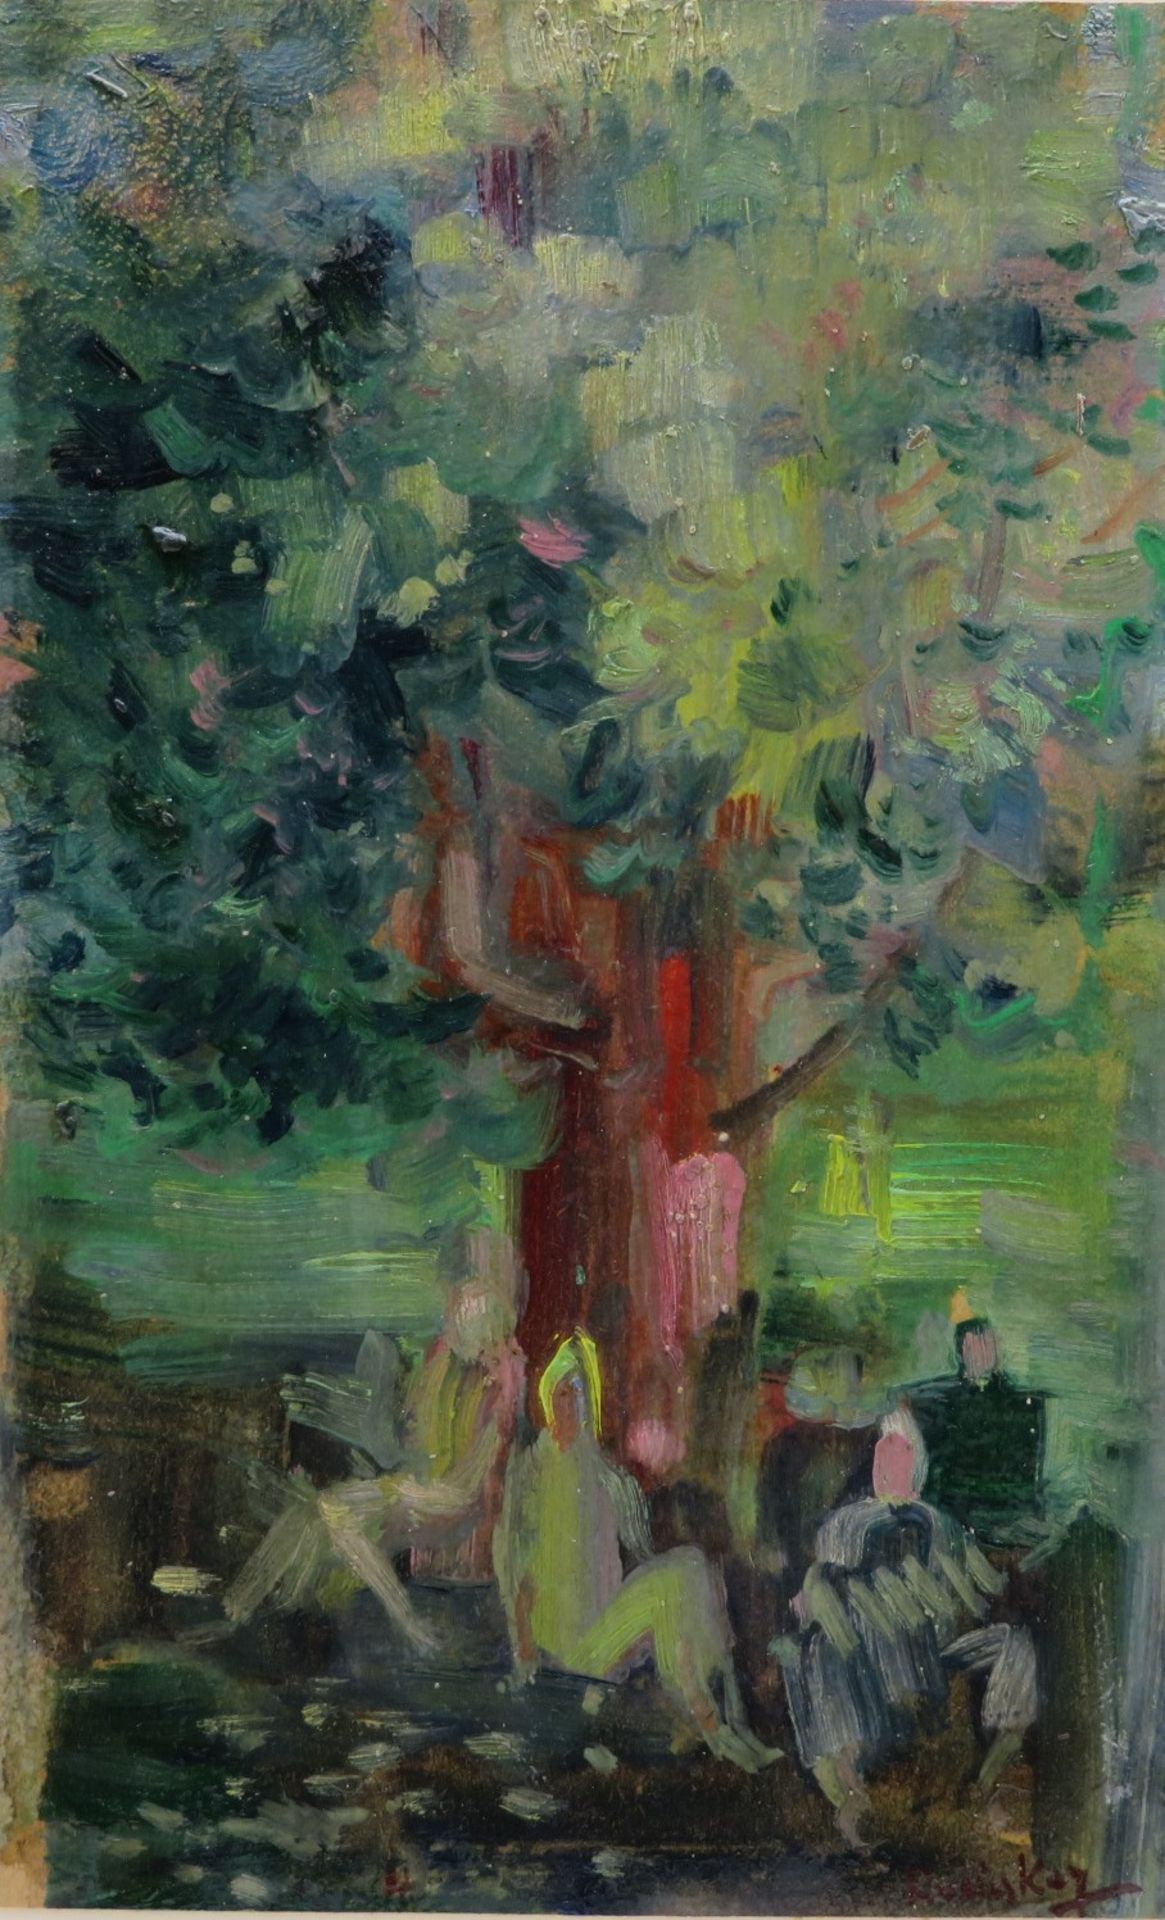 Ruzicskay, György, 1896 - 1993, Szarvas - Budapest, Ungarischer Maler, stud. an der AdBK in München